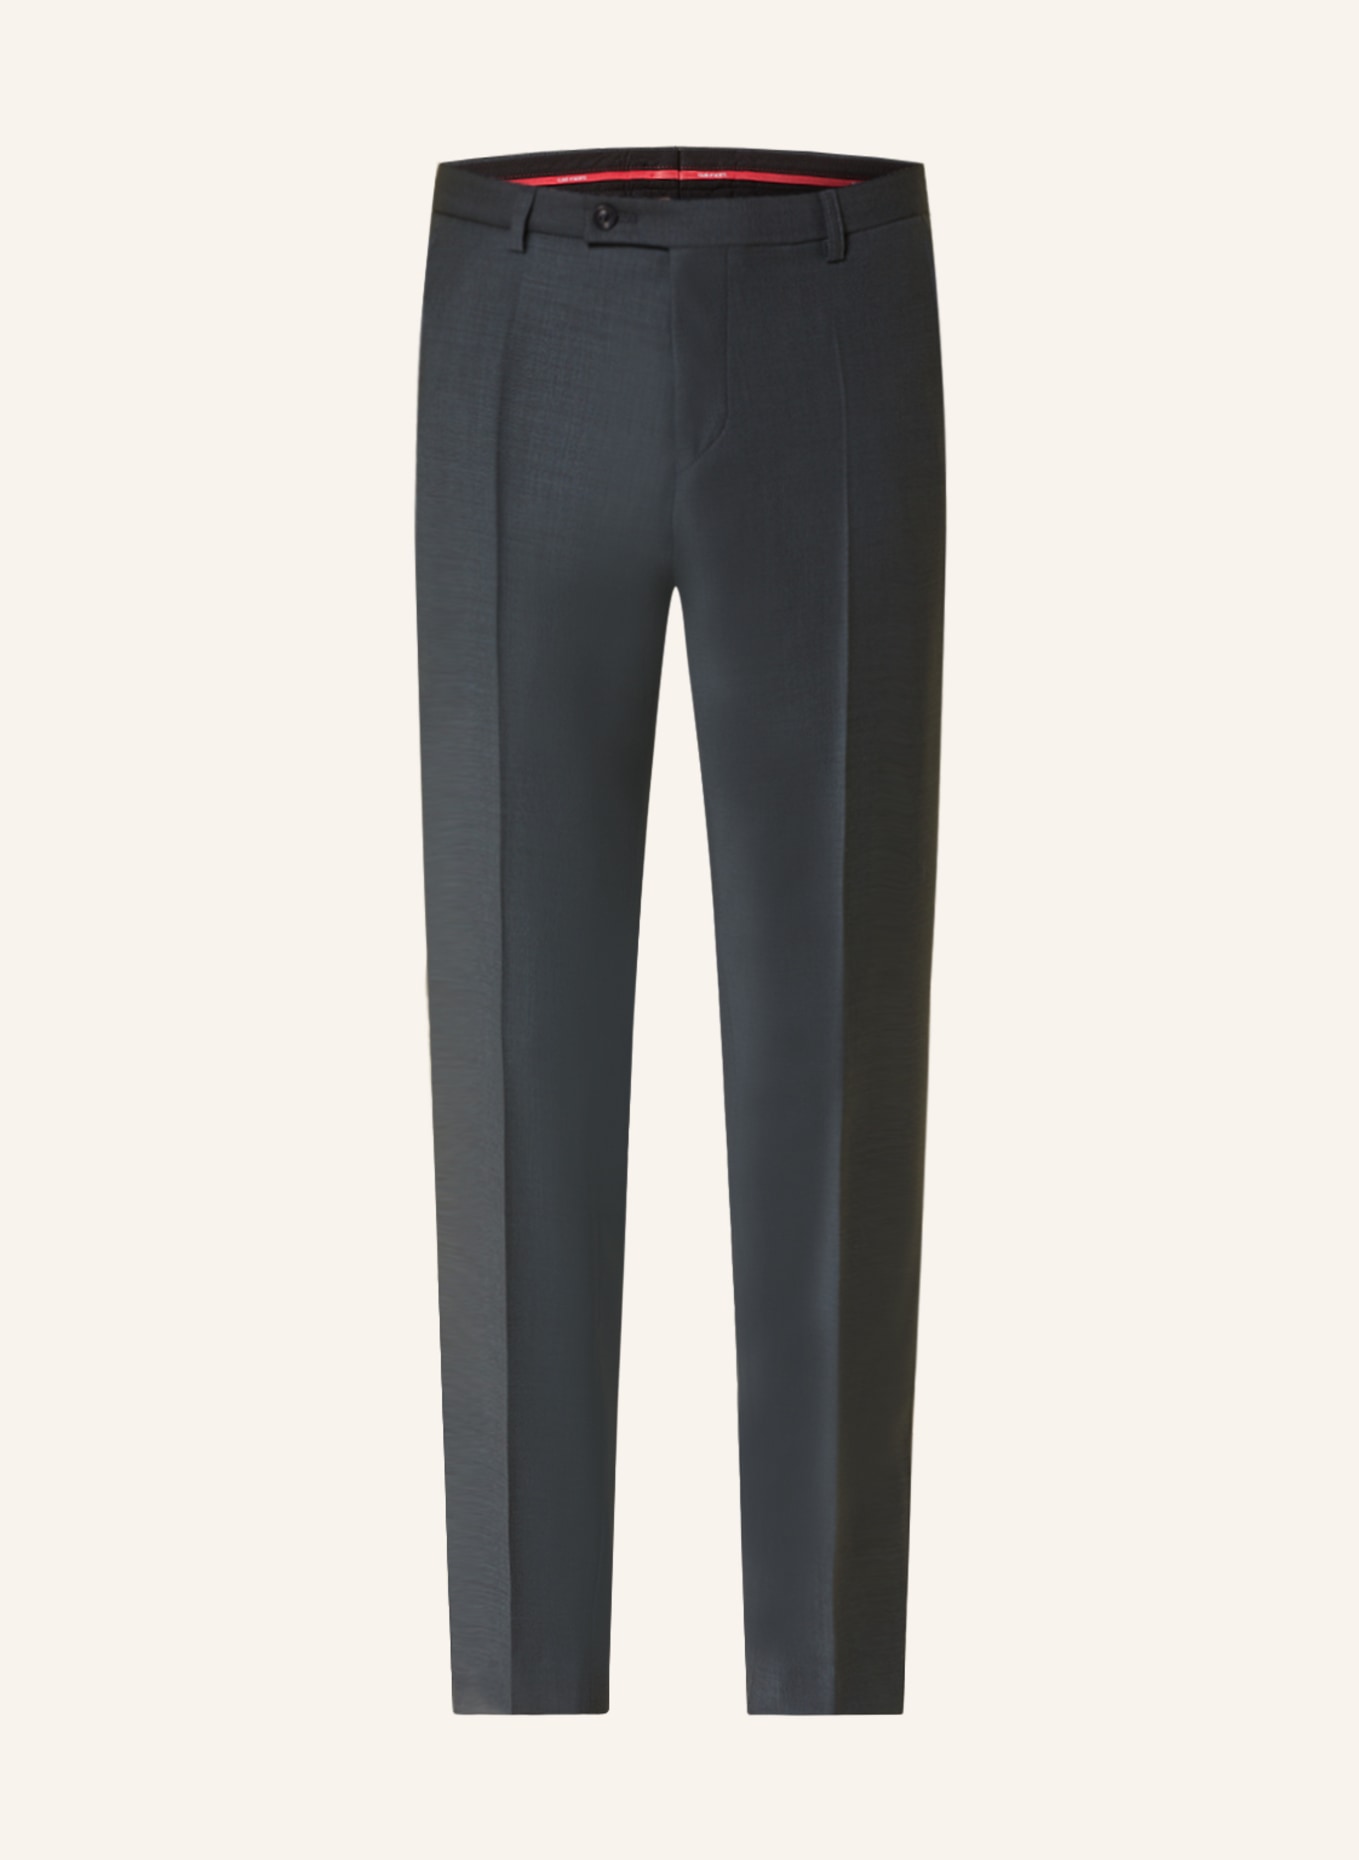 CG - CLUB of GENTS Suit trousers COLE slim fit, Color: 53 gruen dunkel (Image 1)